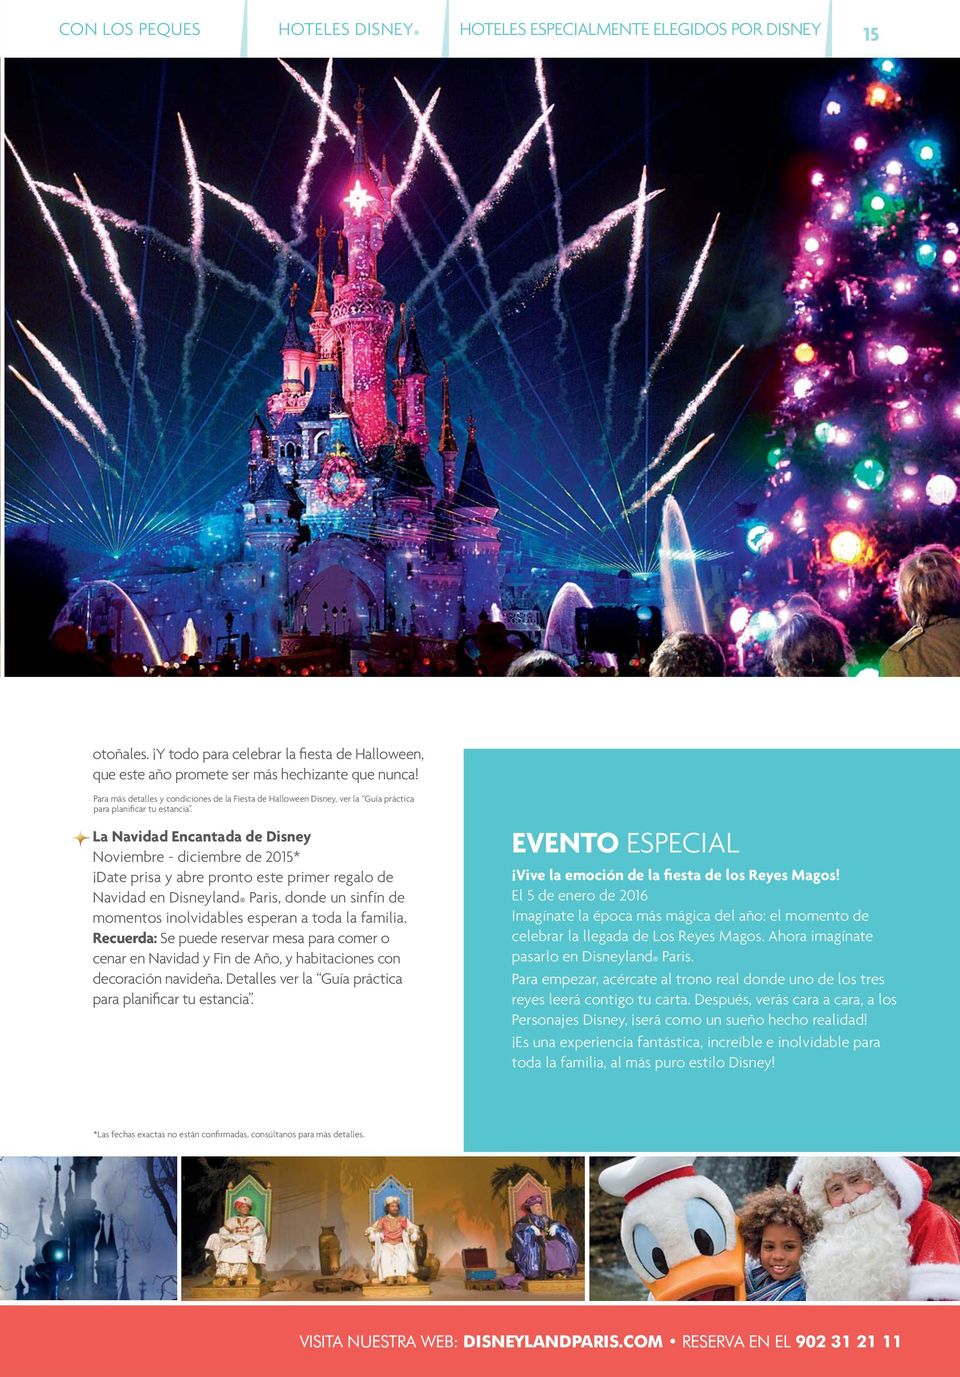 La Navidad Encantada de Disney Noviembre - diciembre de 2015* Date prisa y abre pronto este primer regalo de Navidad en Disneyland Paris, donde un sinfín de momentos inolvidables esperan a toda la